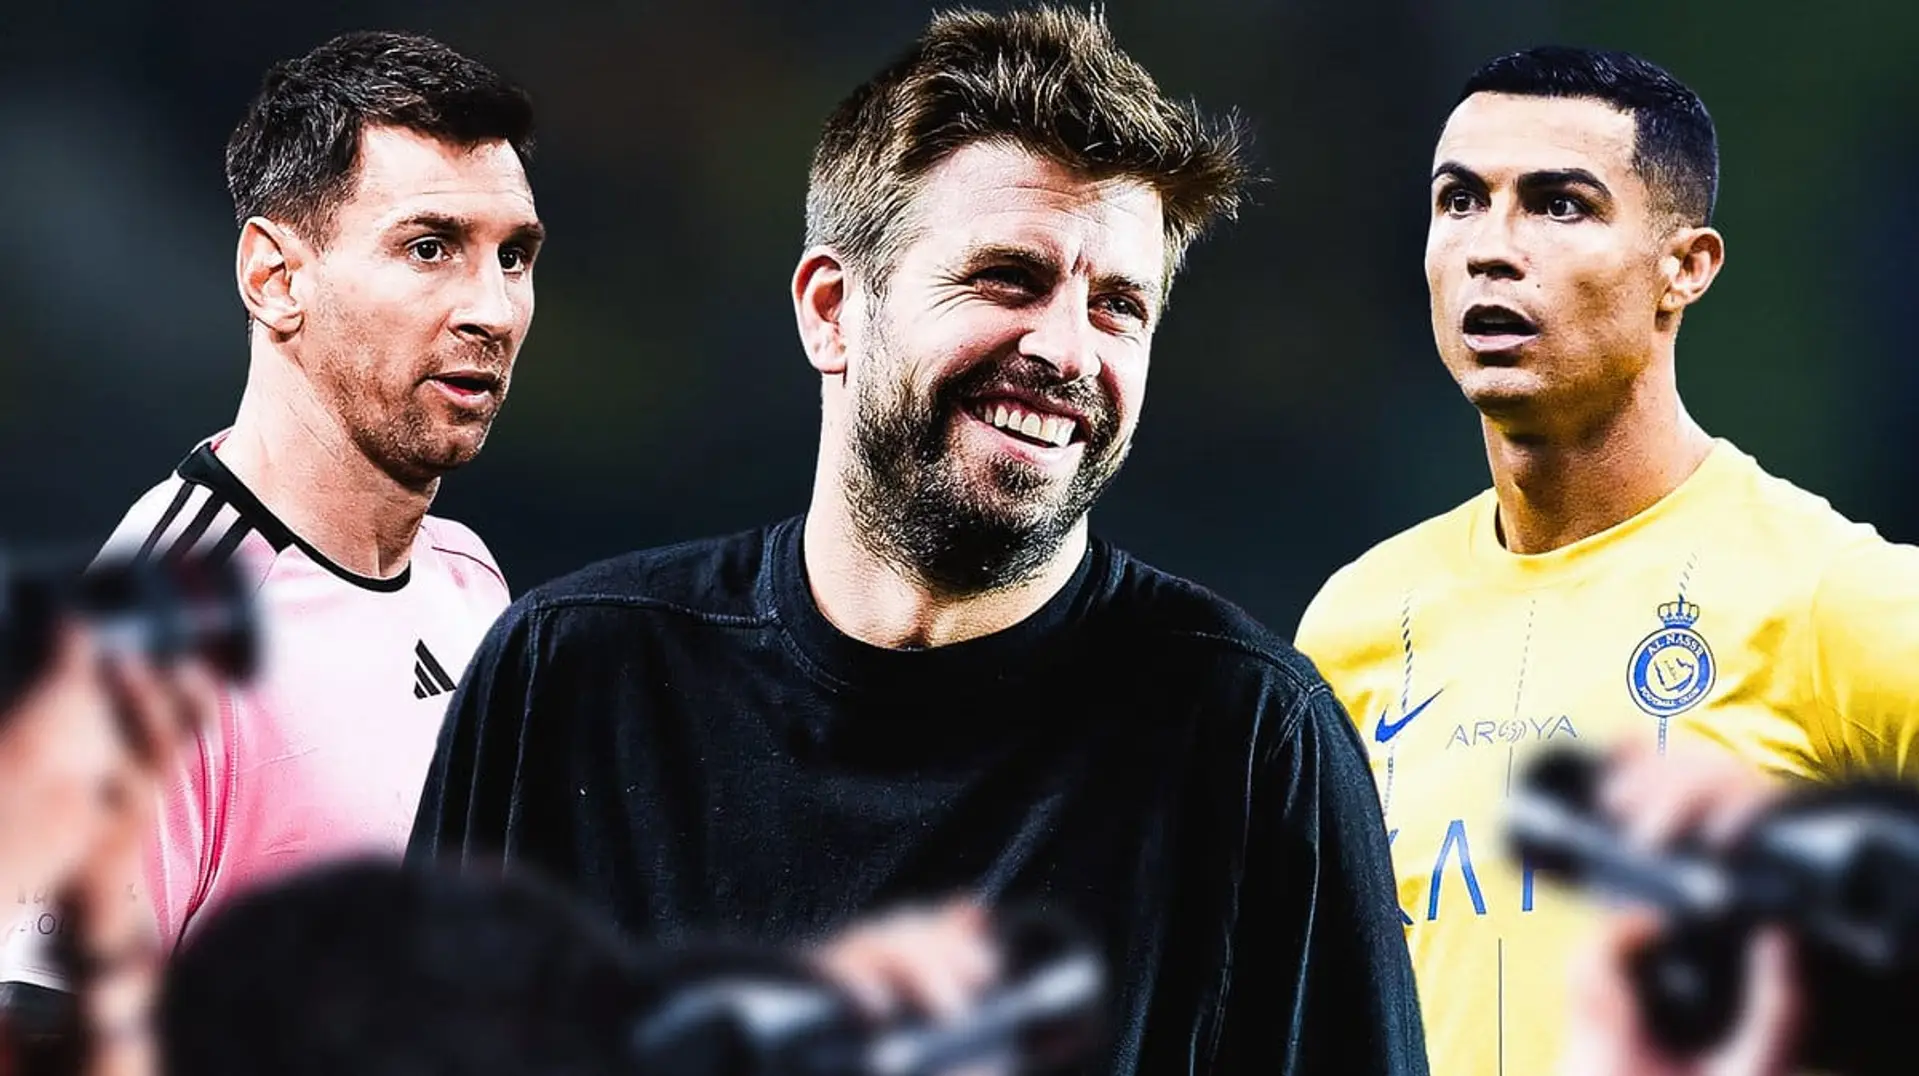 Pique glaubt, dass Messi die Rivalität mit Ronaldo ignoriert hat: "Leo ist nicht so, er konzentriert sich auf die Trophäen mit der Mannschaft"